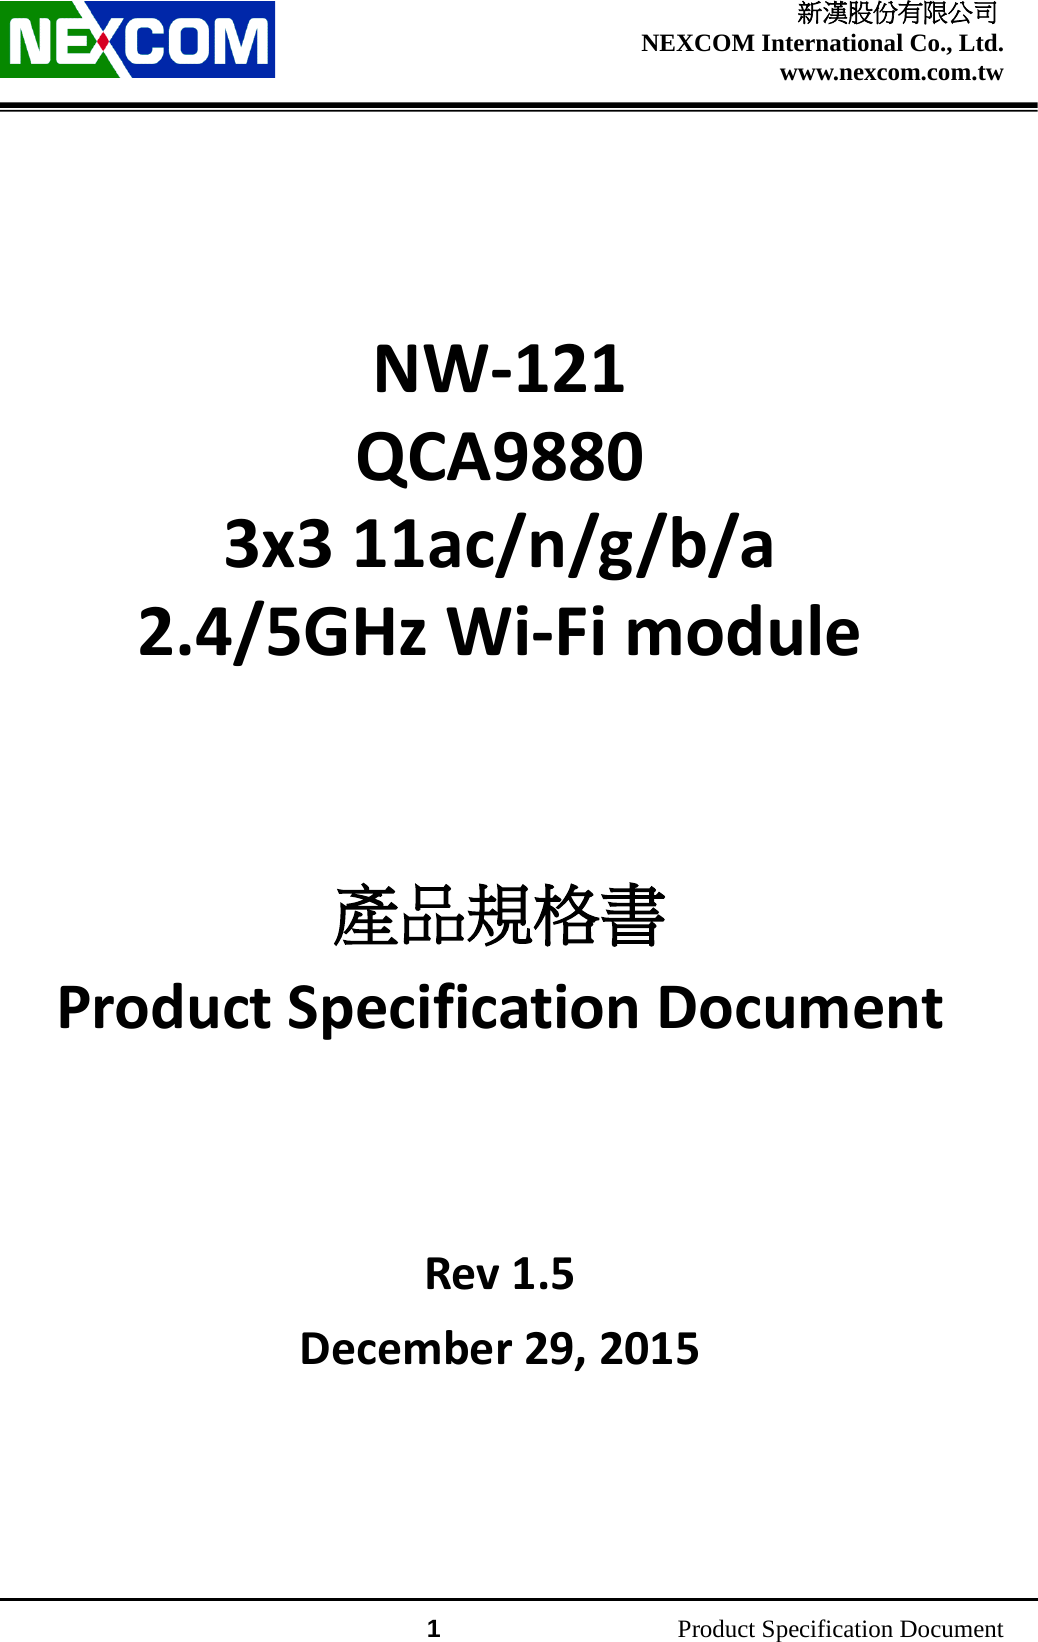    新漢股份有限公司 NEXCOM International Co., Ltd. www.nexcom.com.tw                 1          Product Specification Document    NW-121 QCA9880 3x3 11ac/n/g/b/a 2.4/5GHz Wi-Fi module     產品規格書 Product Specification Document      Rev 1.5 December 29, 2015     